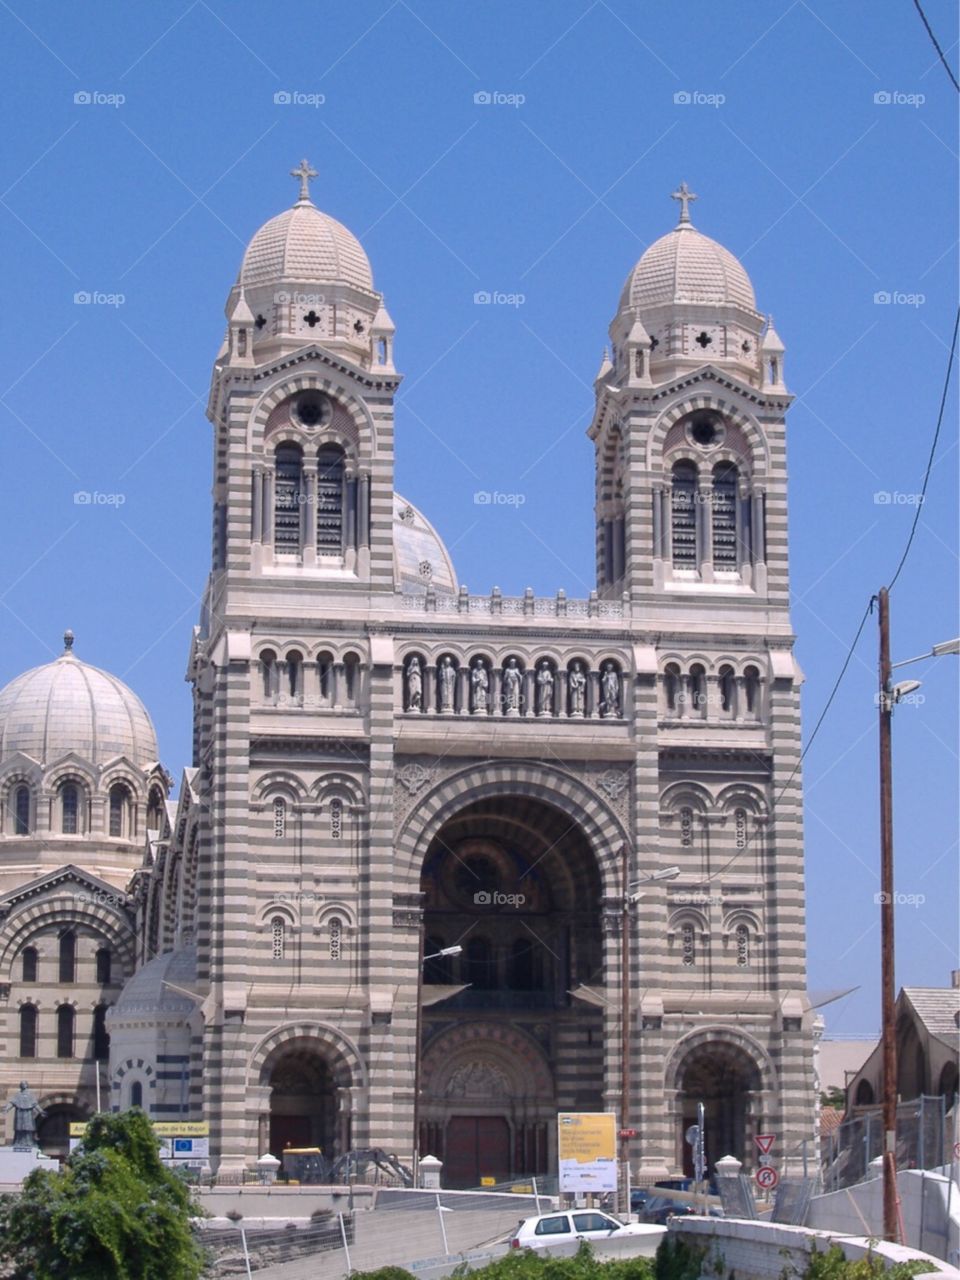 Basilique Notre-Dame de la Garde in Marseille, France. 